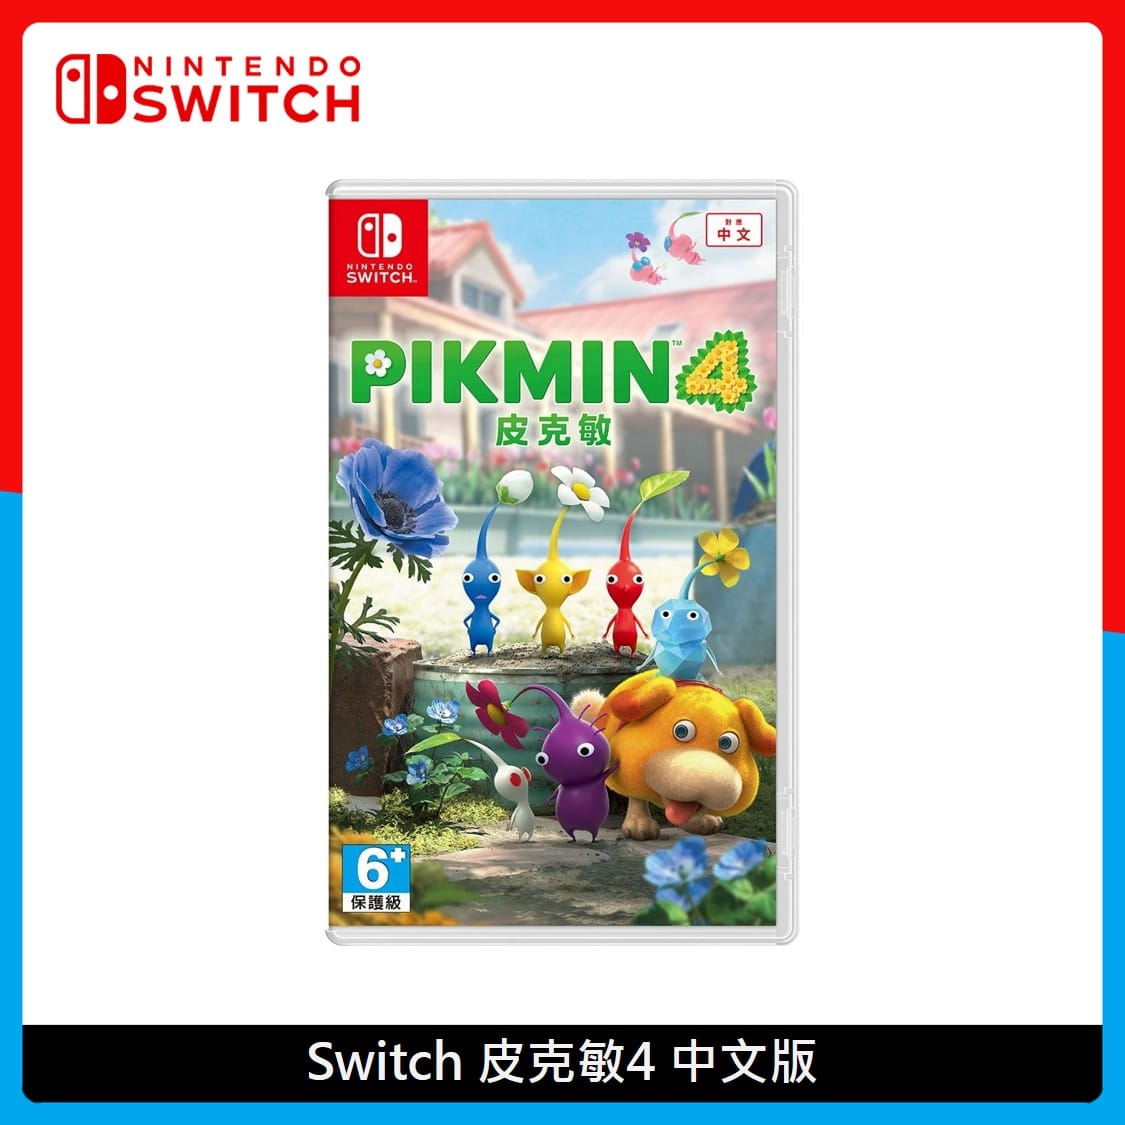 Nintendo Switch 皮克敏4 中文版贈特典| 法雅客網路商店